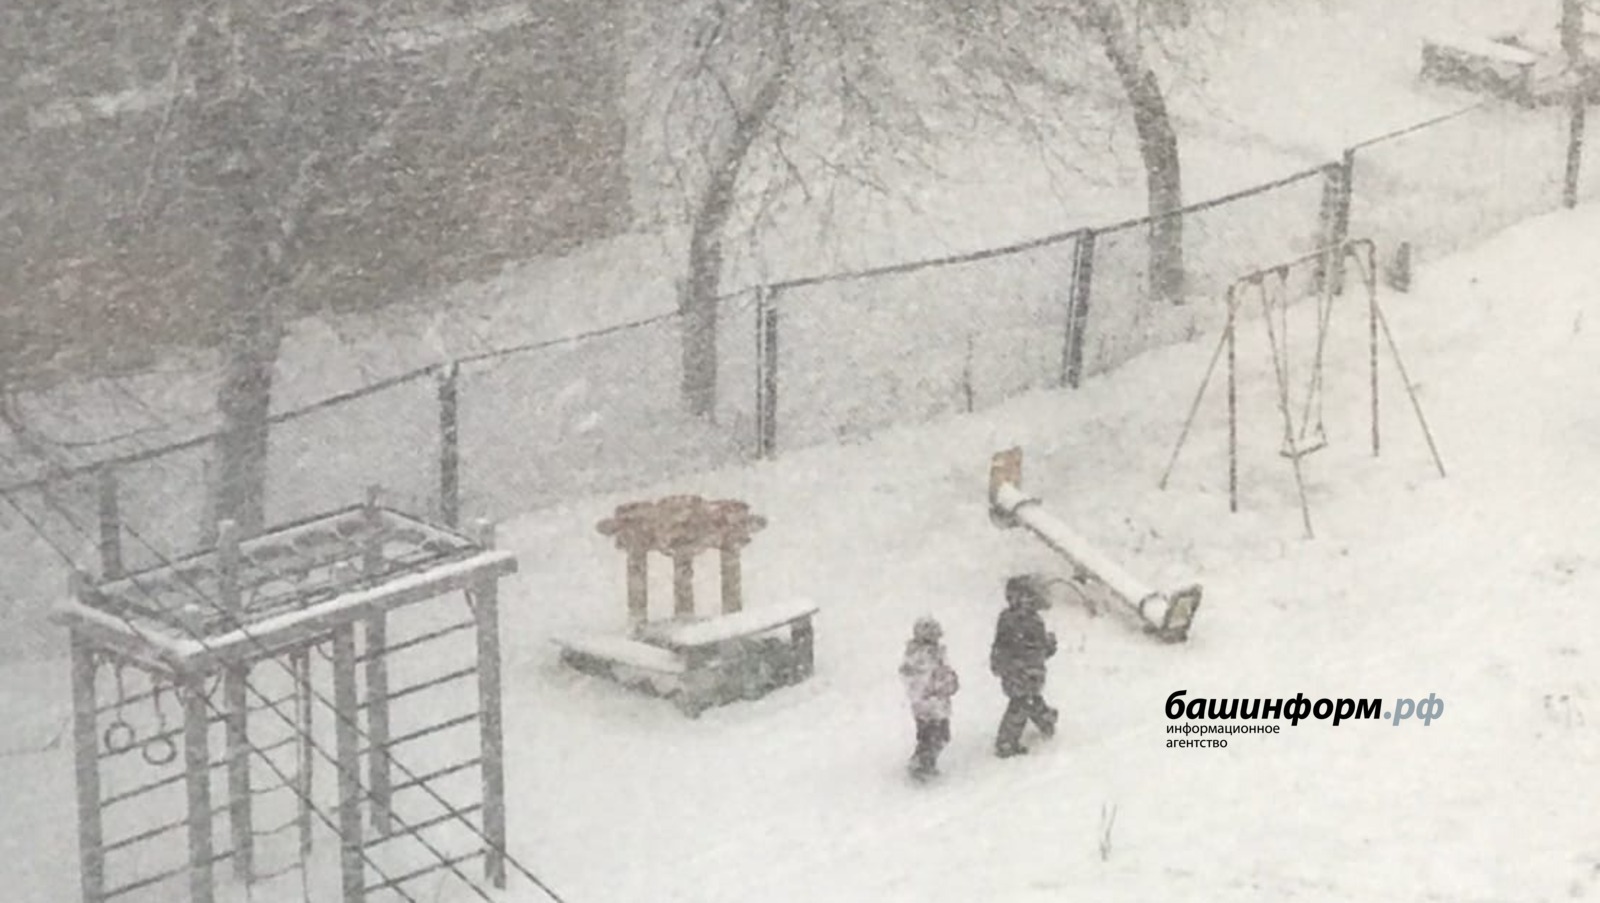 Метель, сильный ветер и снегопад: МЧС Башкирии предупреждает о ненастной погоде